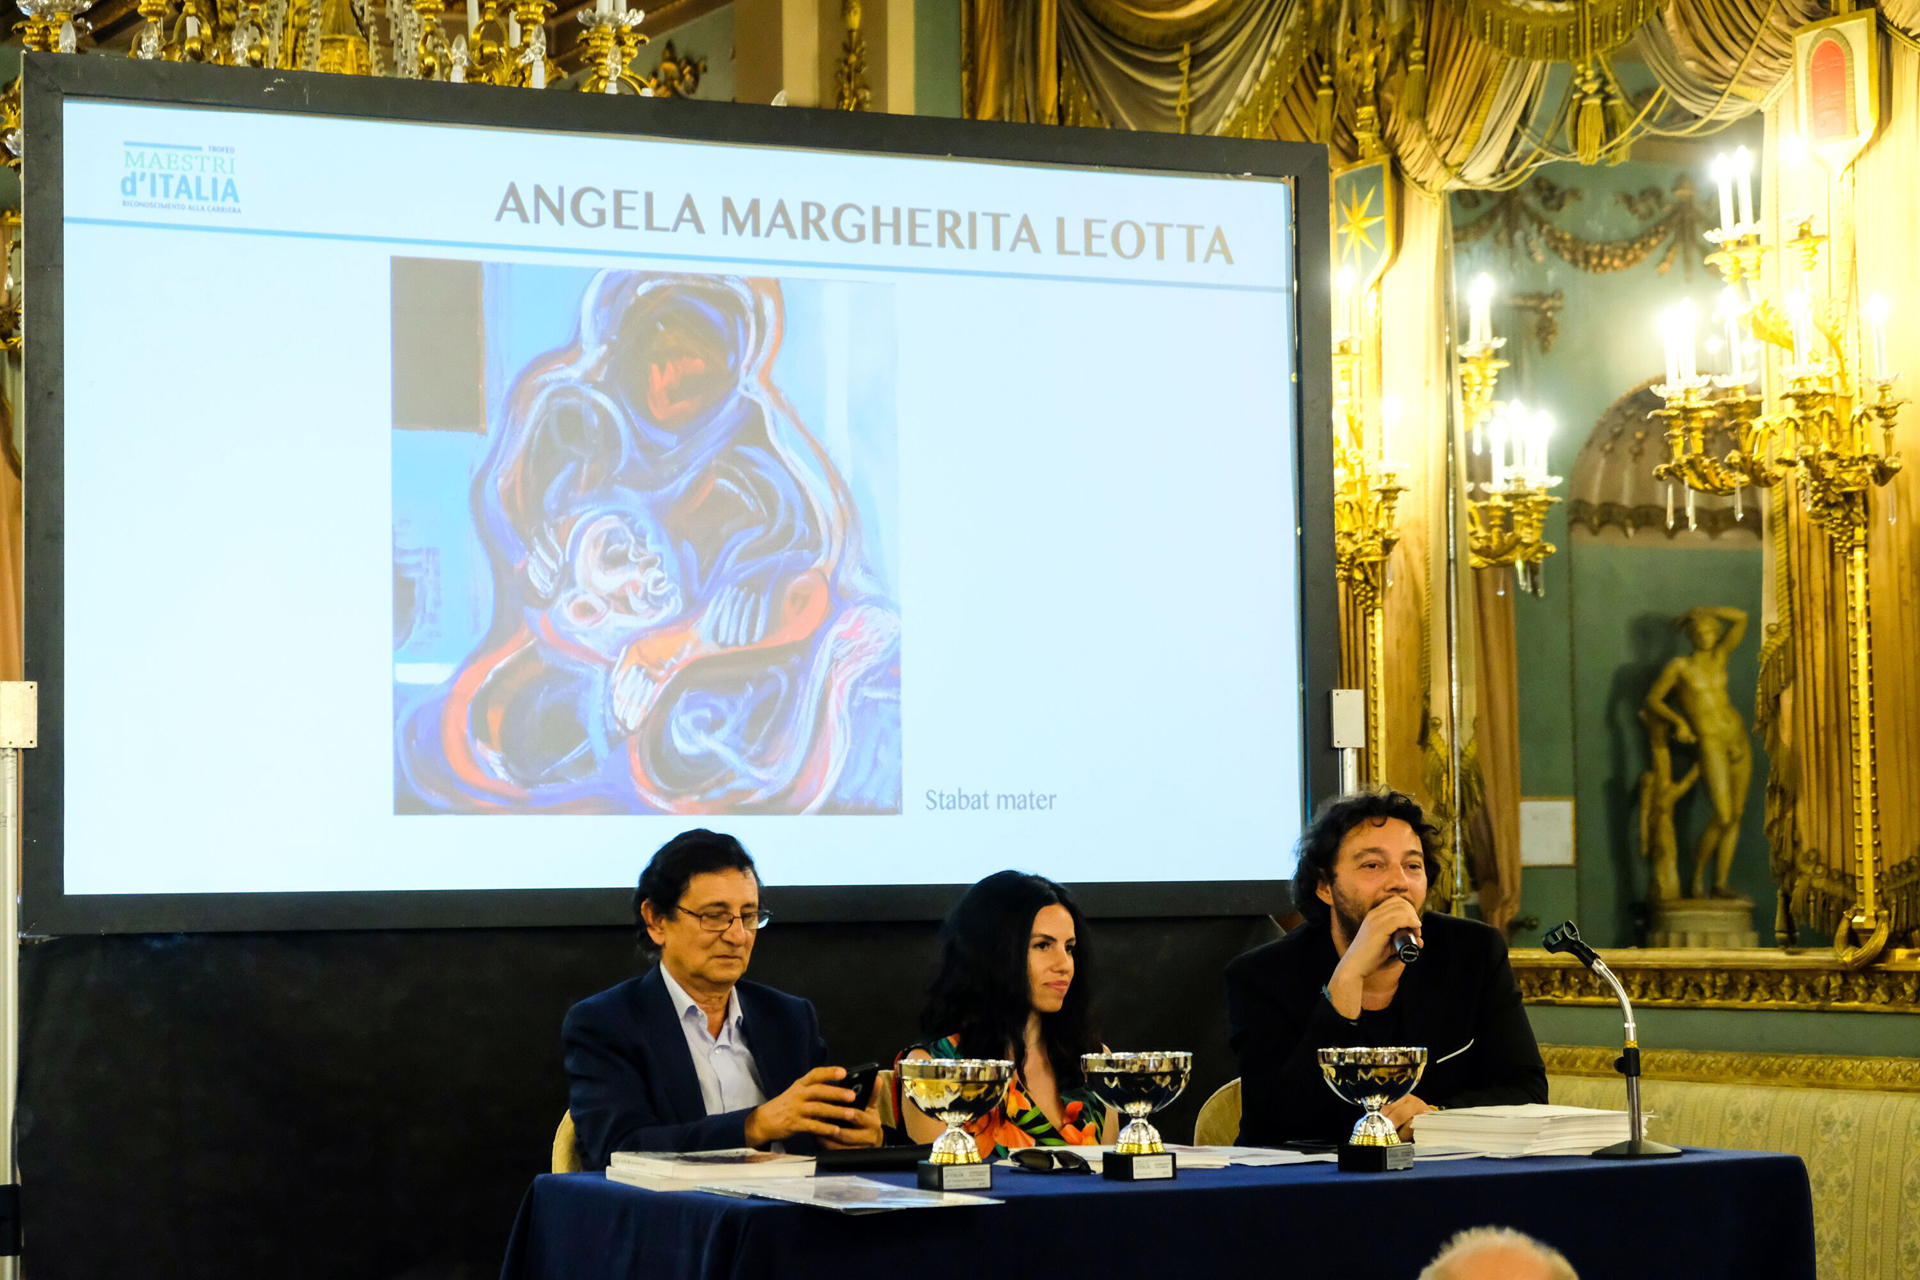 Trofeo Maestri D'Italia - I relatori argomentano sull'attribuzione del premio alla carriera artistica